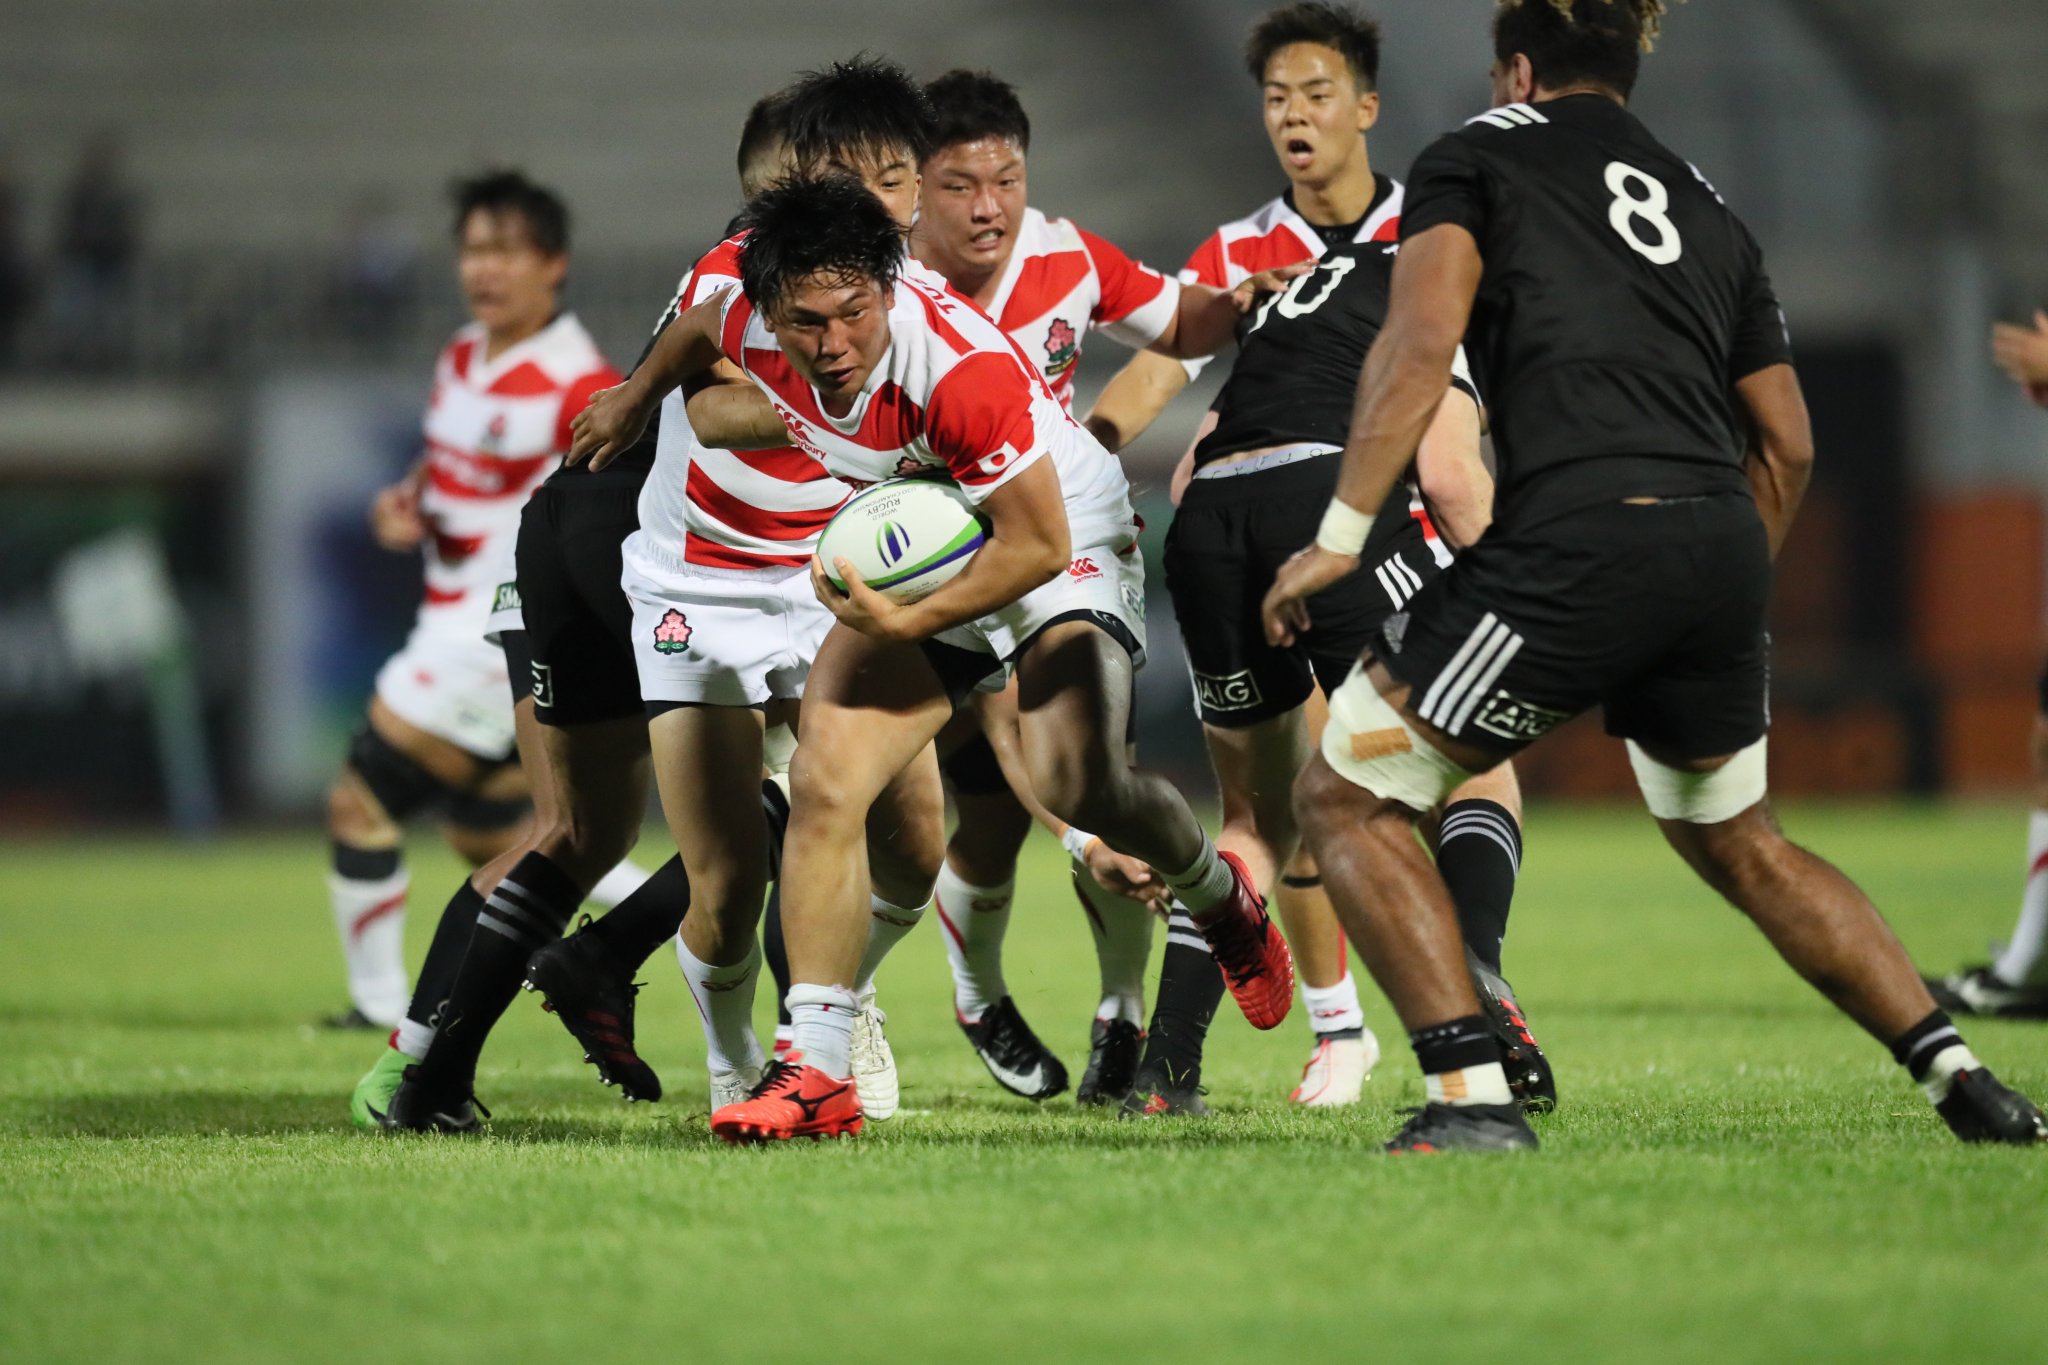 日本ラグビーフットボール協会 U日本代表 ワールドラグビーuチャンピオンシップ18 第1戦uニュージーランド代表戦のギャラリーをアップしました T Co 0eksxiokms Rugbyjp Worldrugbyus